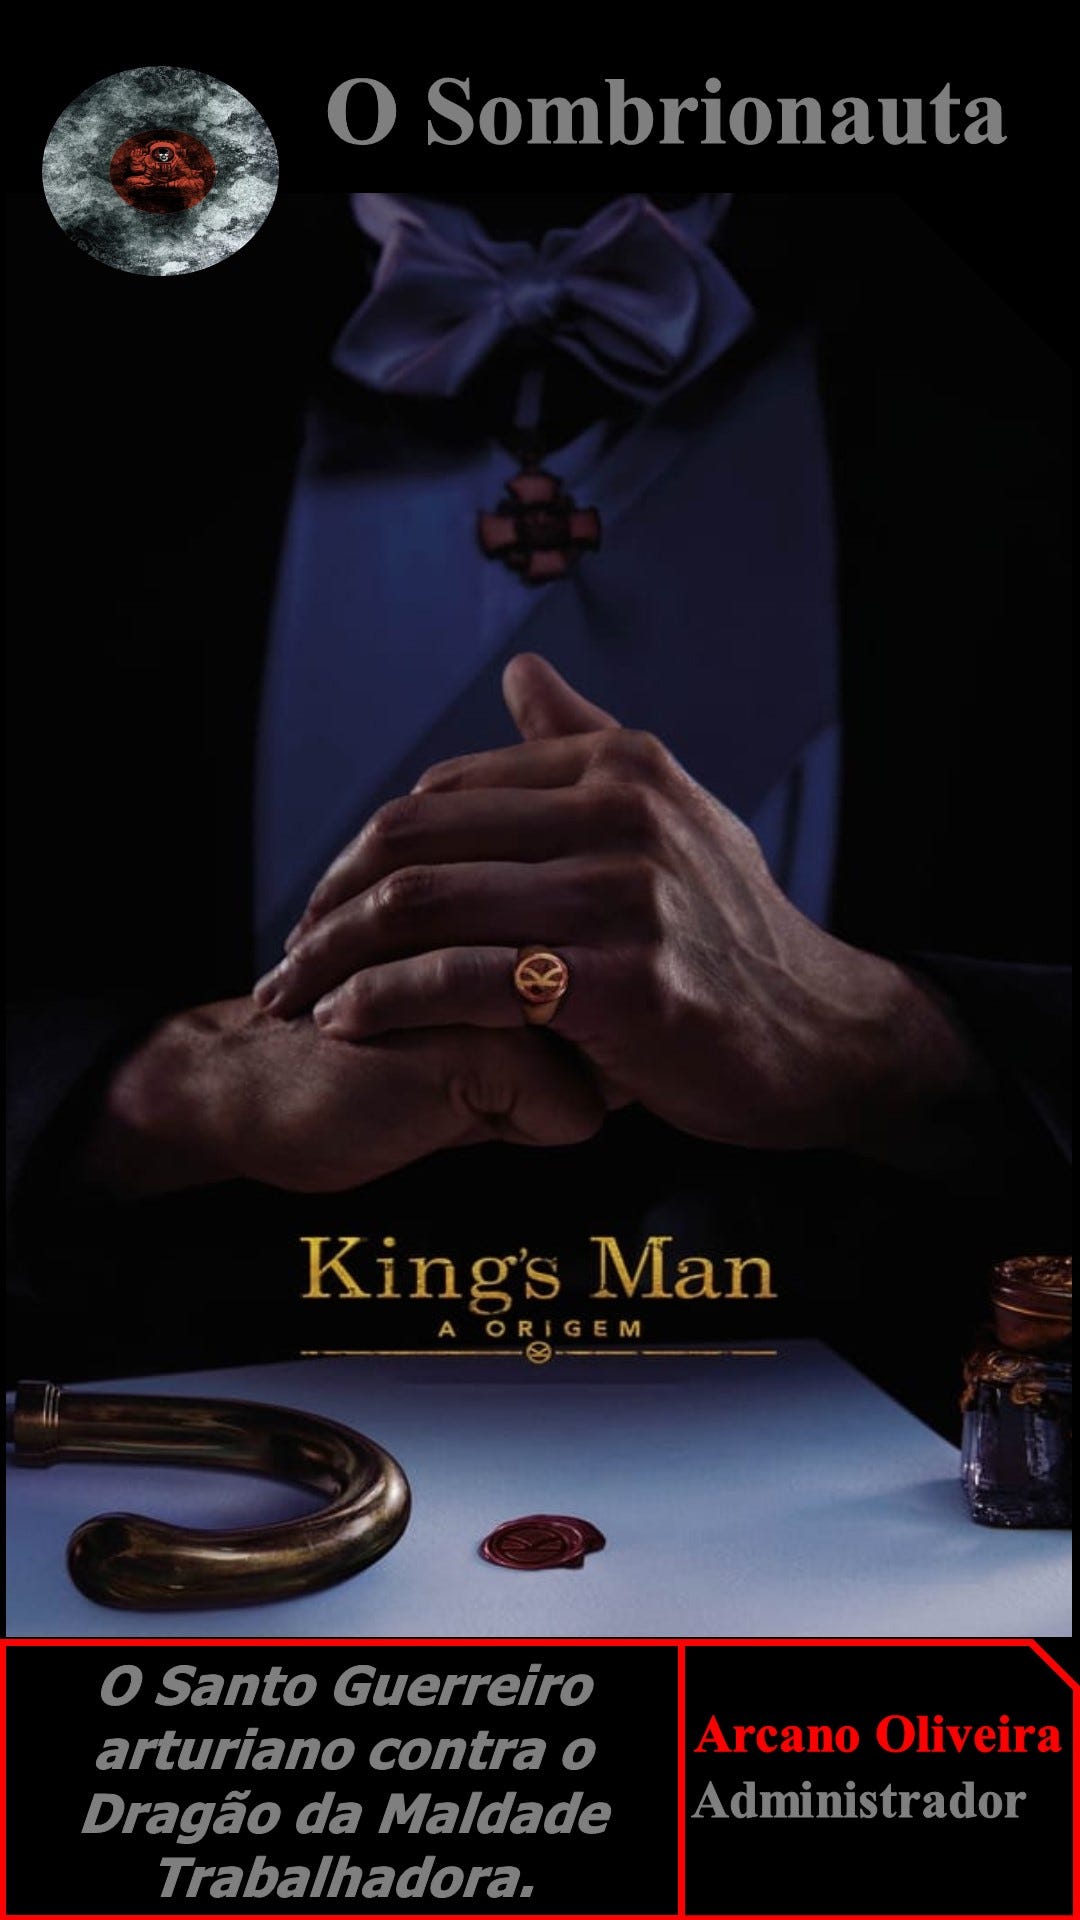 A ordem correta para assistir aos filmes de Kingsman